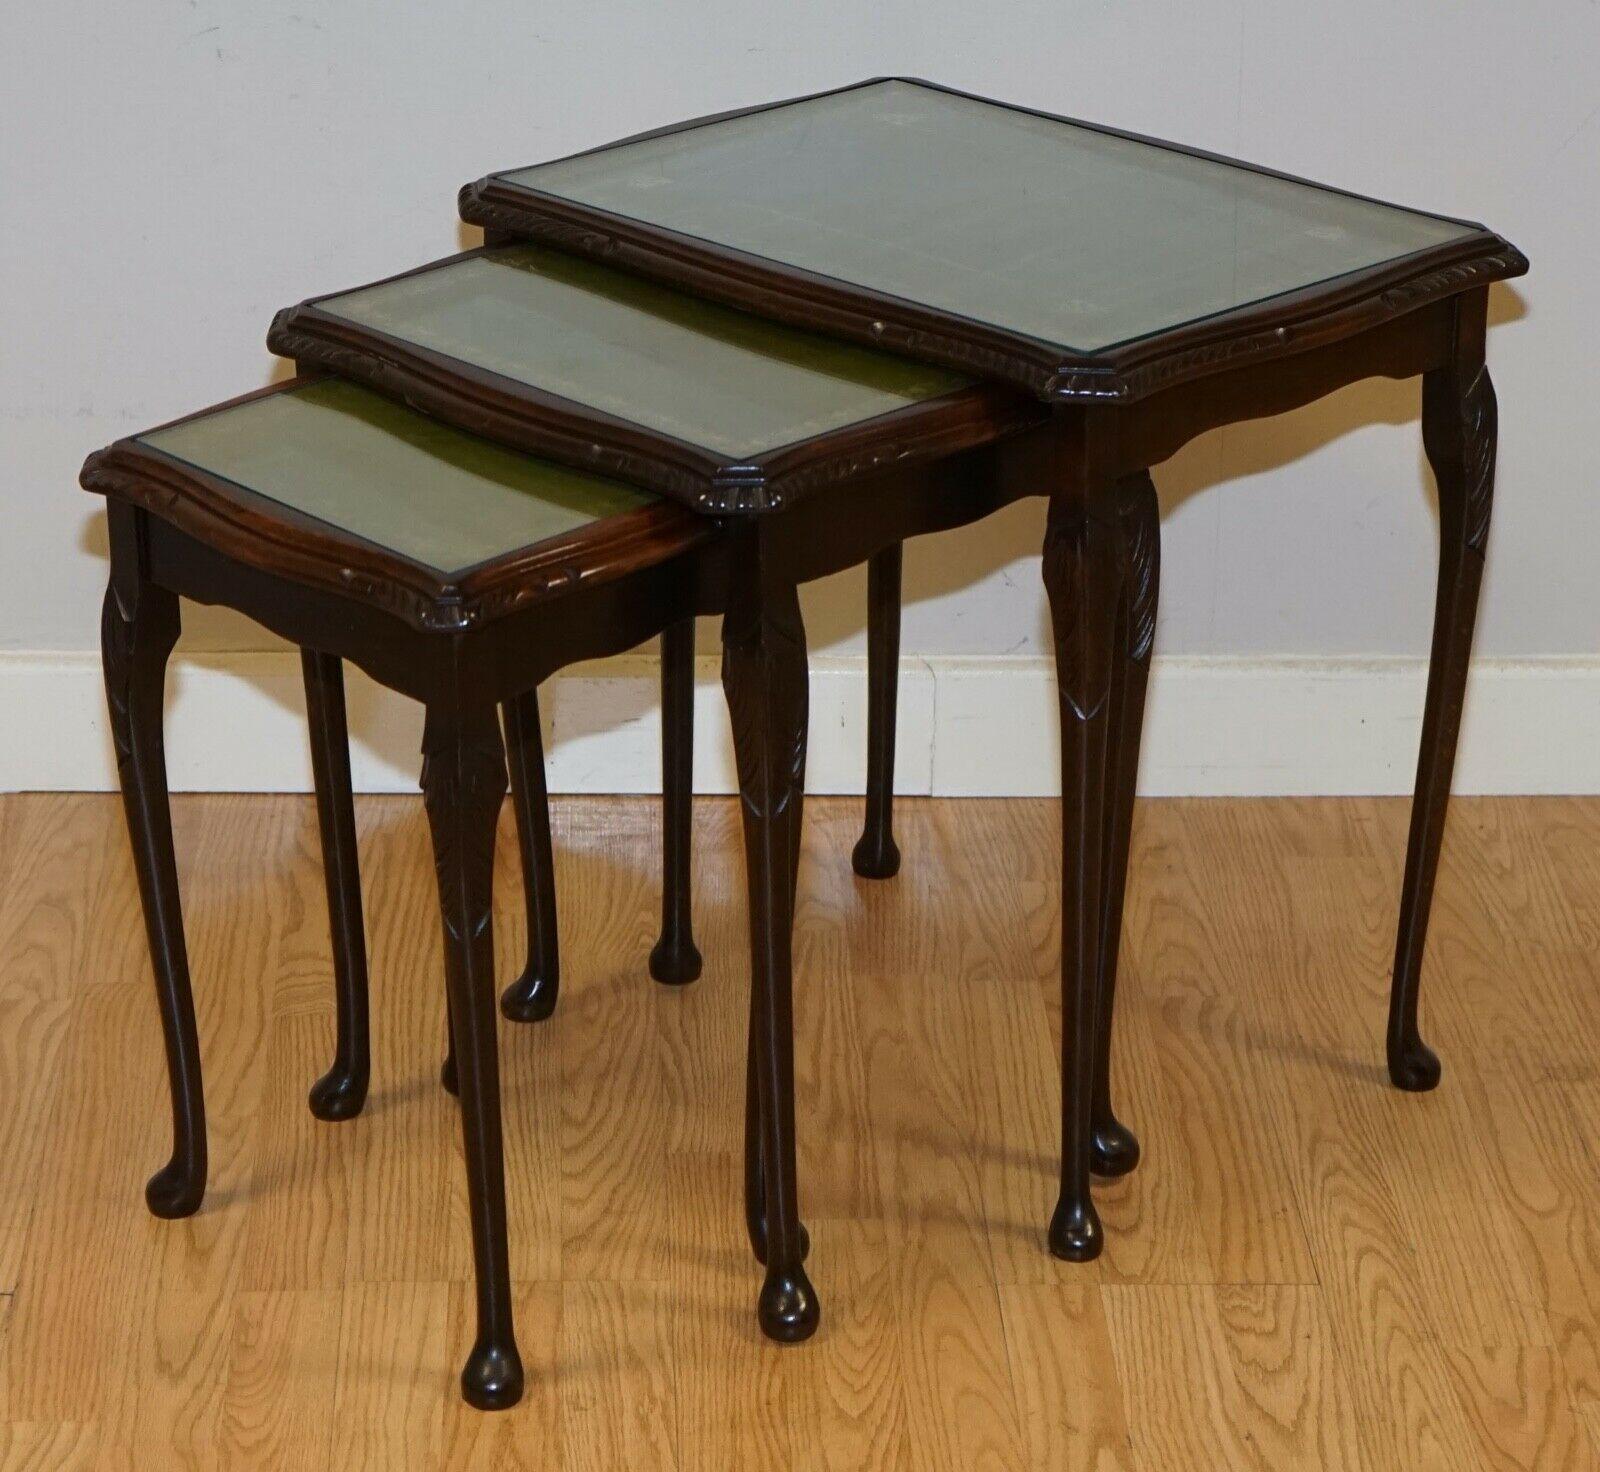 Nous sommes ravis de vous proposer ce nid de tables vintage avec dessus en cuir vert, elles comprennent des plateaux en verre ce qui est très utile pour garder le cuir intact. 

Elles présentent quelques marques ici et là, mais rien de